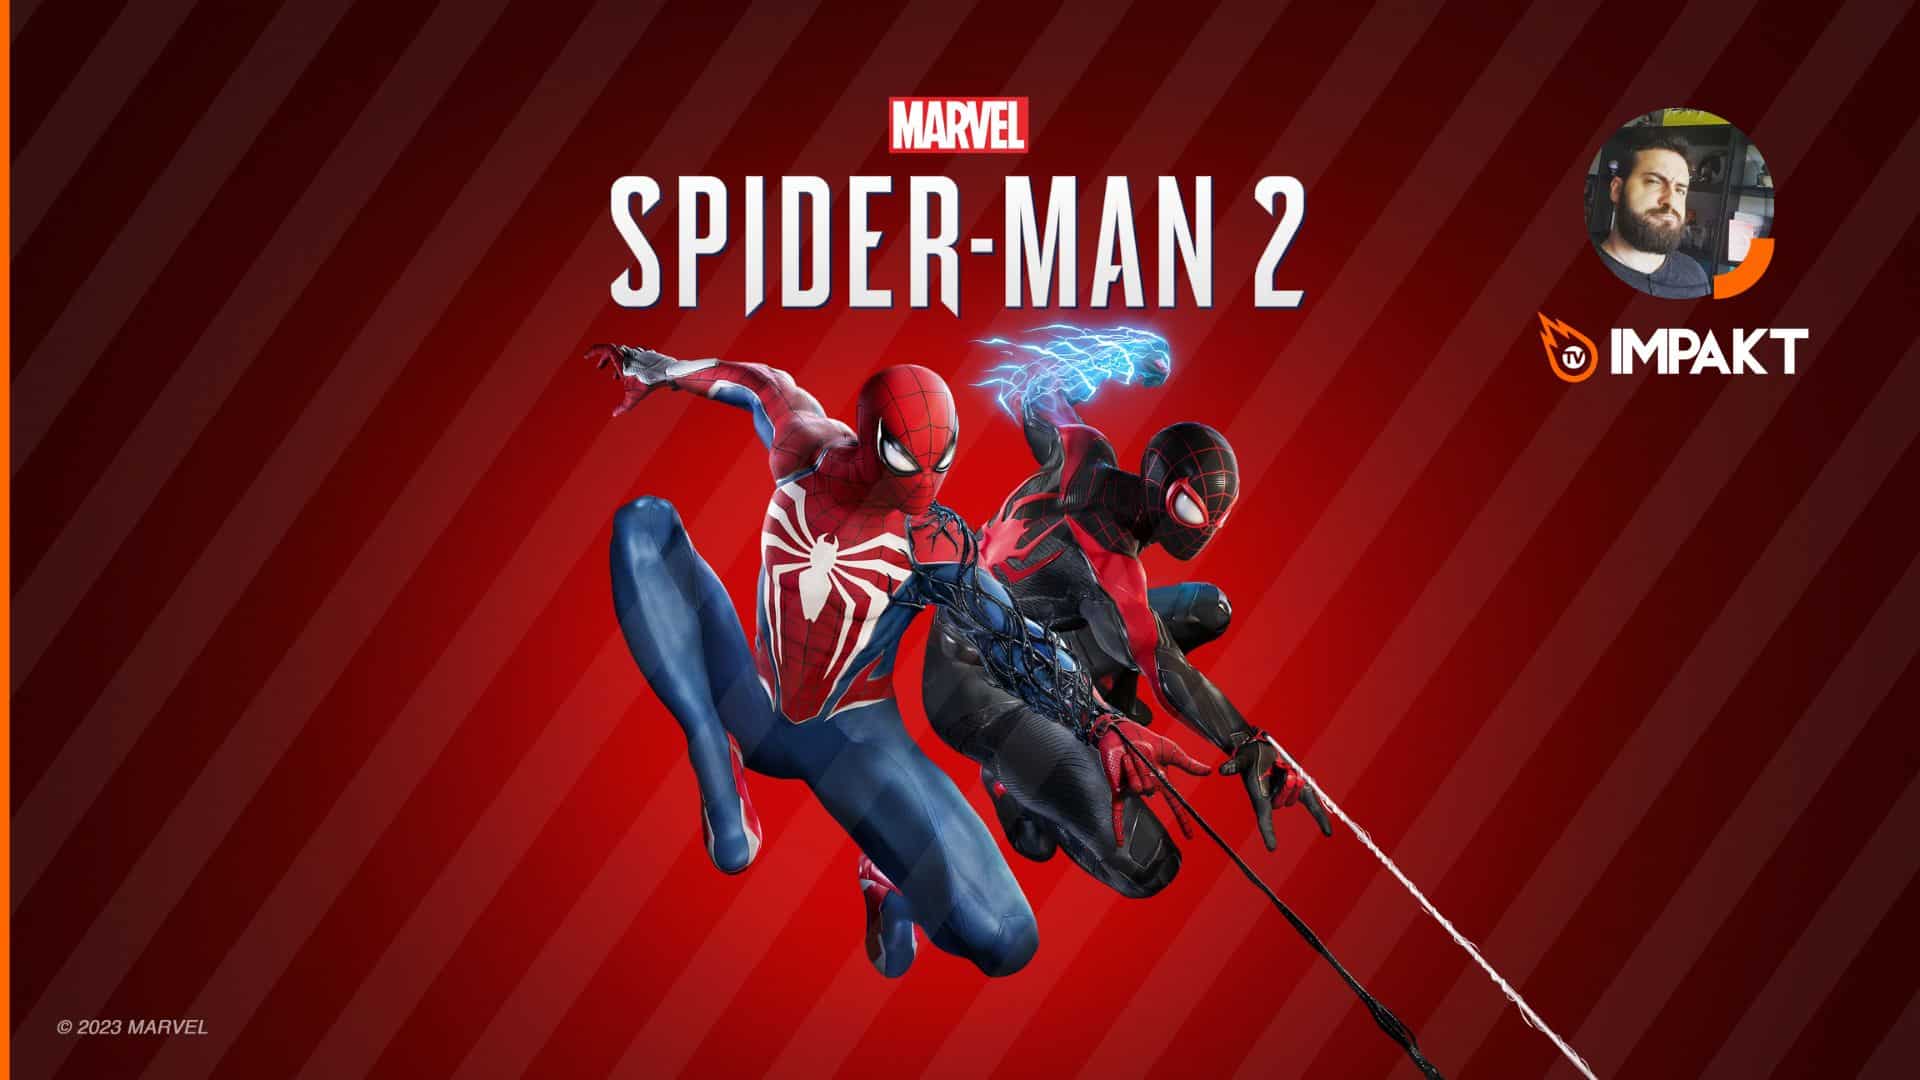 UPDATE: Platinei Marvel’s Spider-Man 2